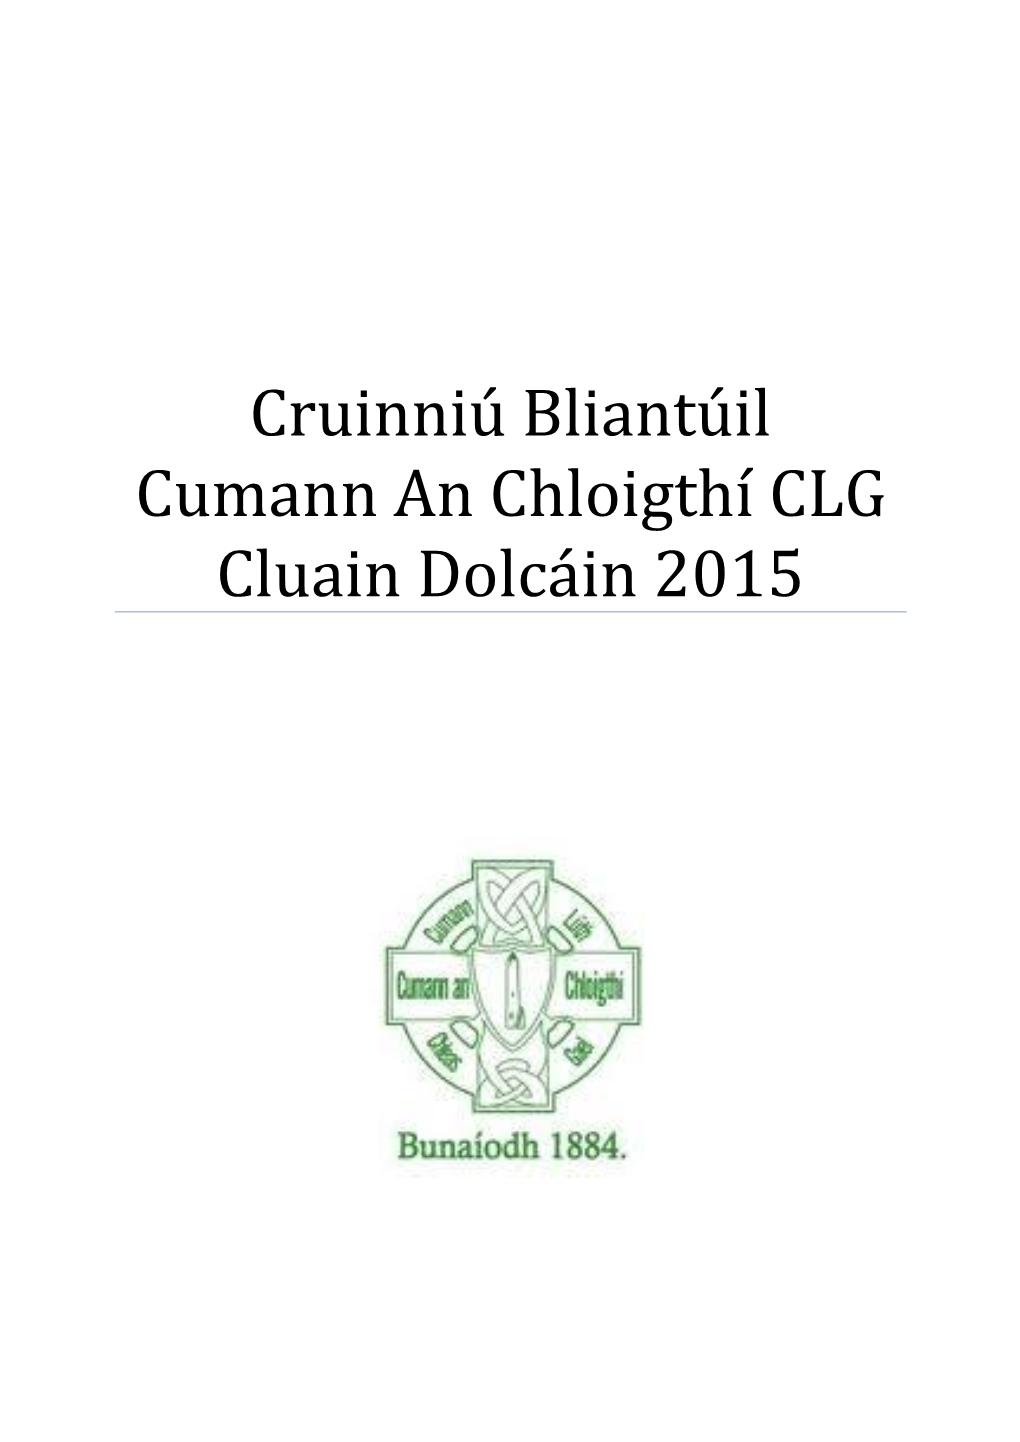 Cruinniú Bliantúil Cumann an Chloigthí CLG Cluain Dolcáin 2015